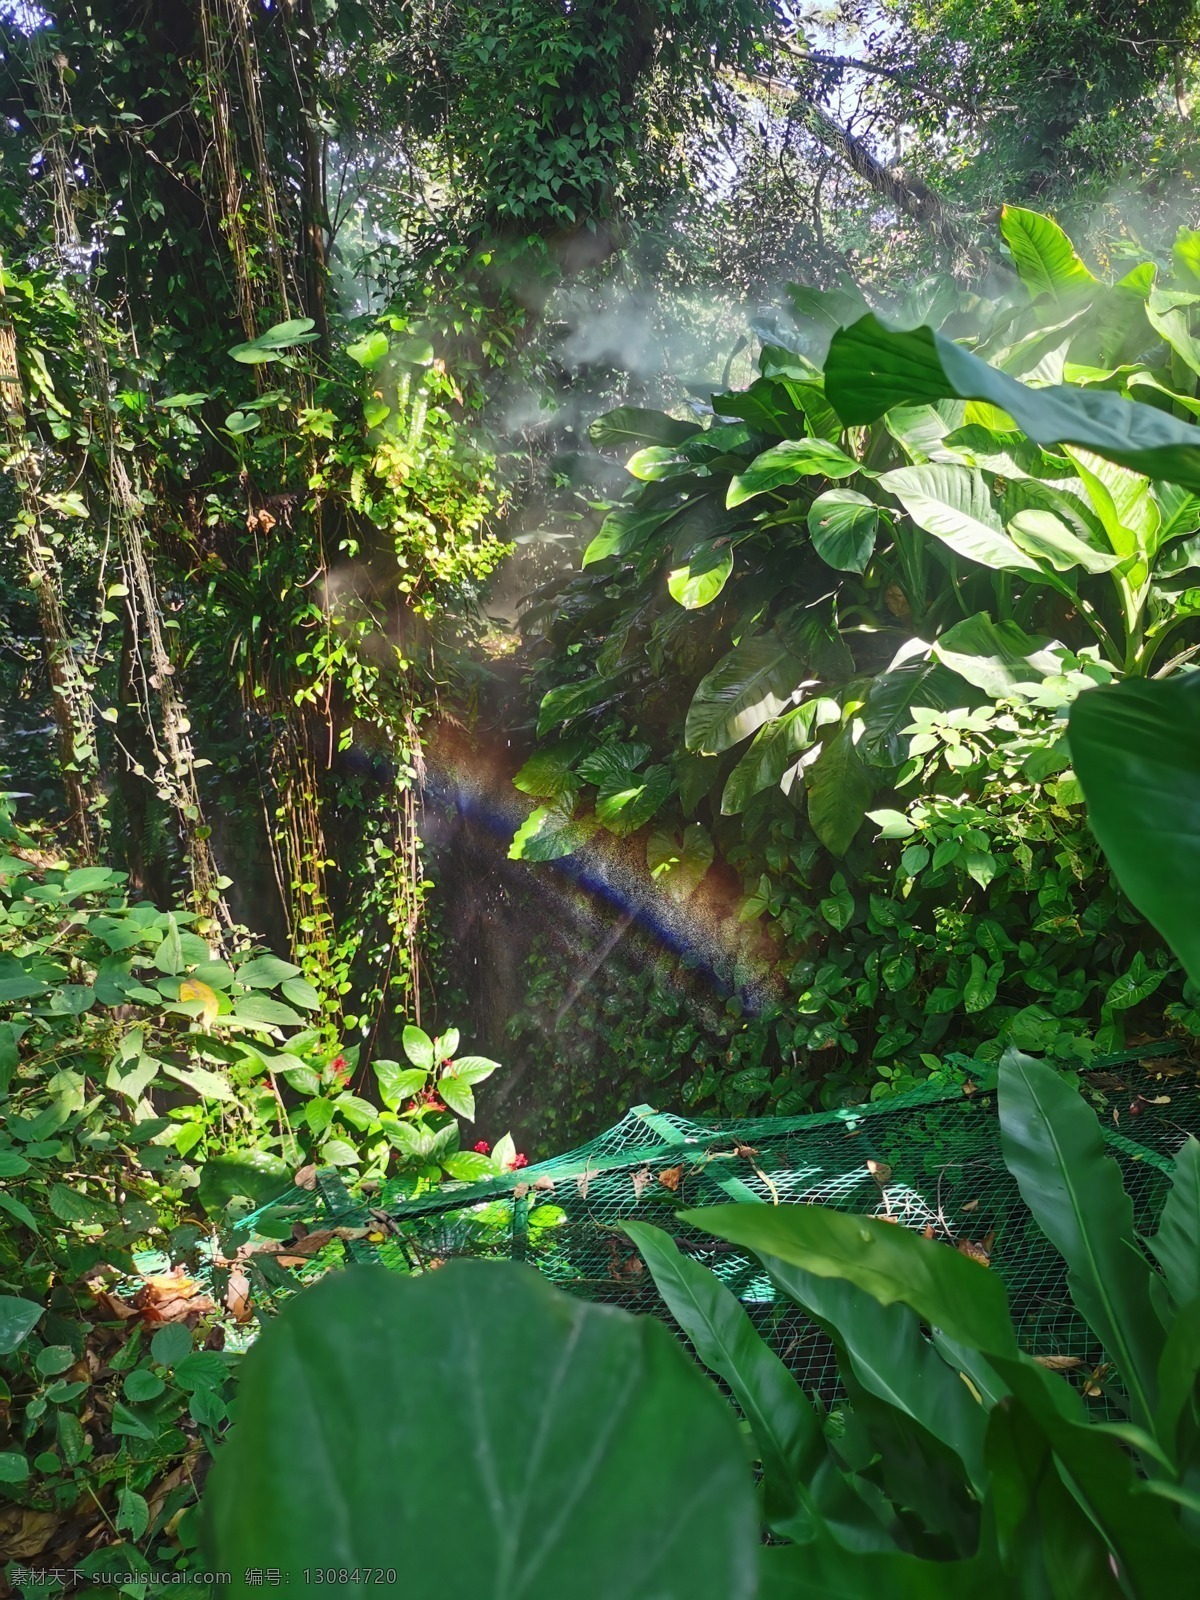 热带雨林图片 雨林世界 园林植物园 丛林雾色 万石植物园 一缕彩虹 旅游摄影 国内旅游